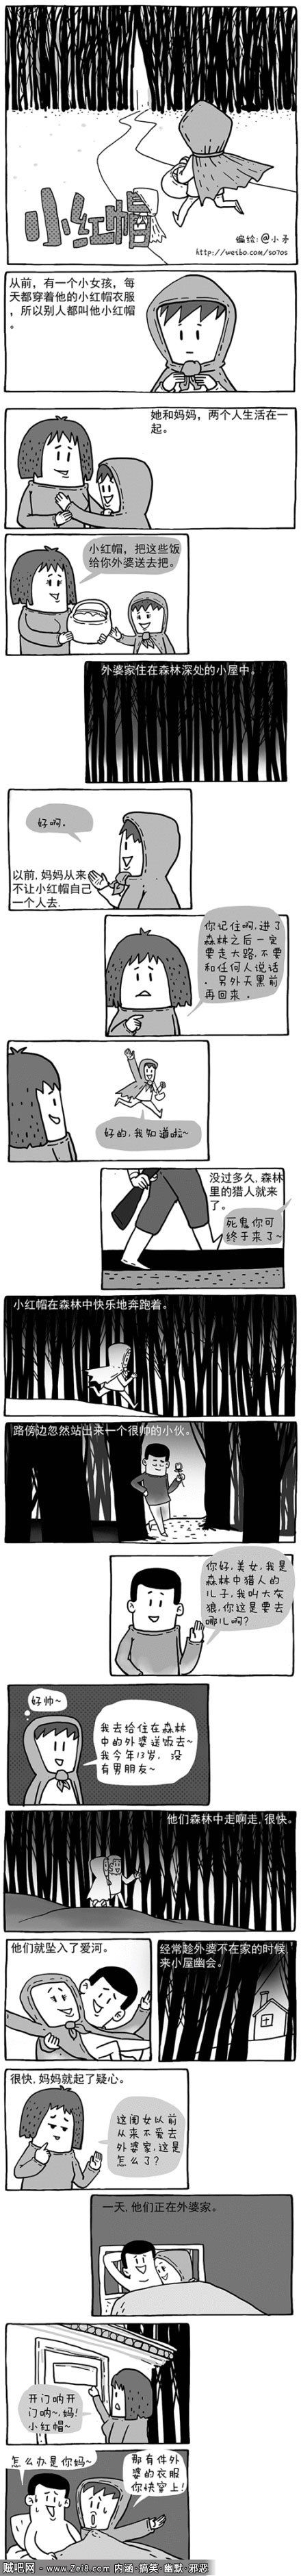 【小矛漫画系列】重编小红帽故事